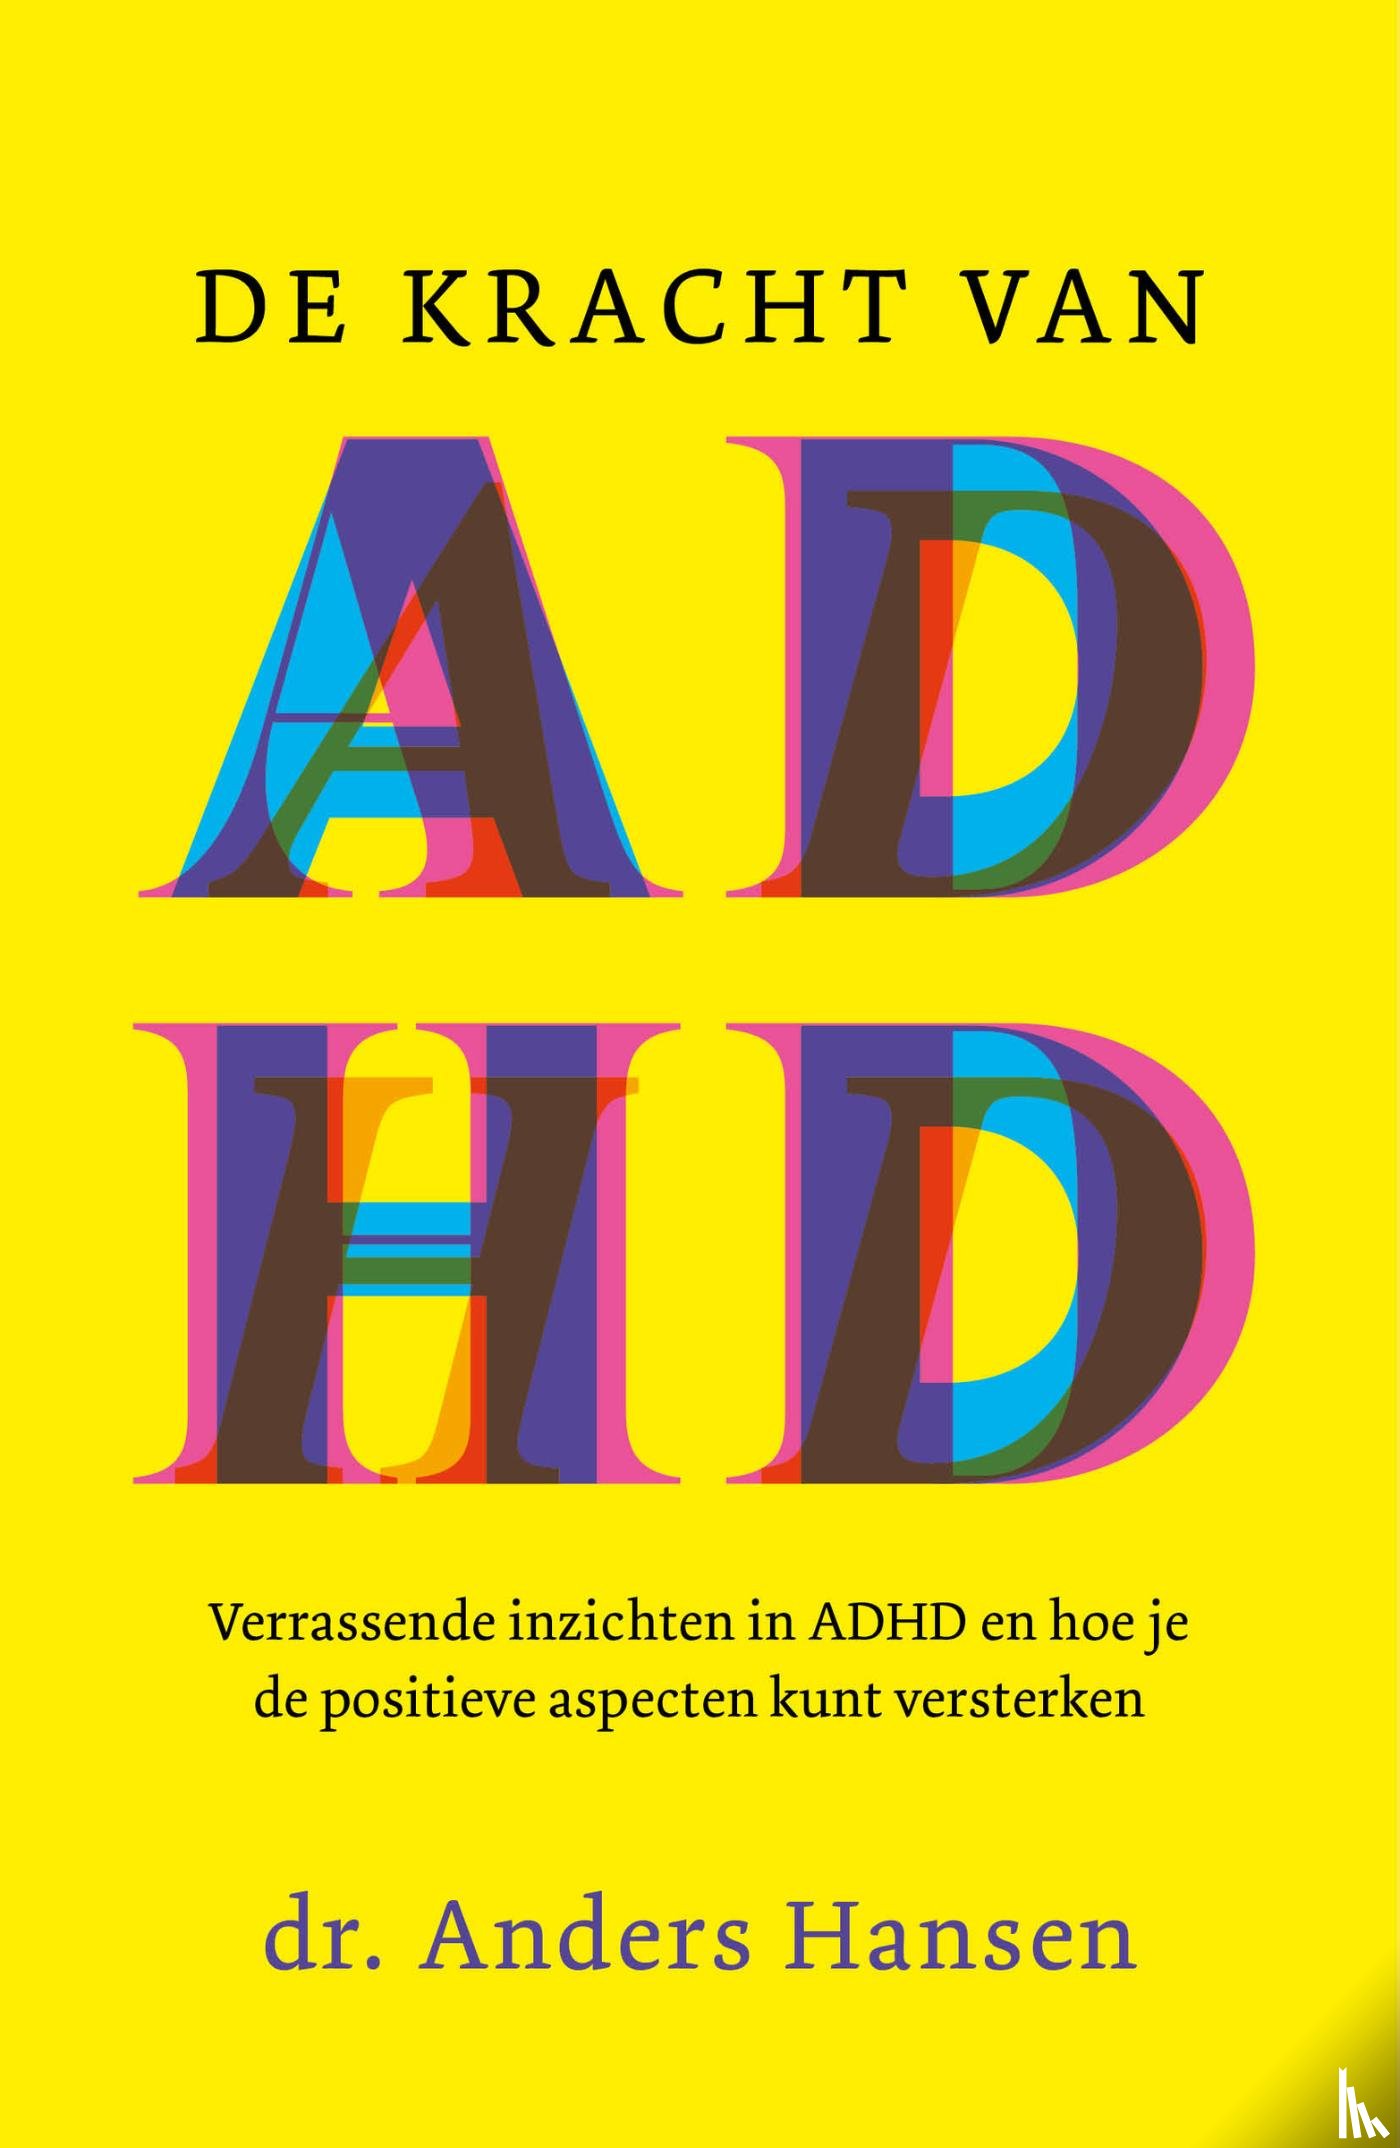 Hansen, Anders - De kracht van ADHD